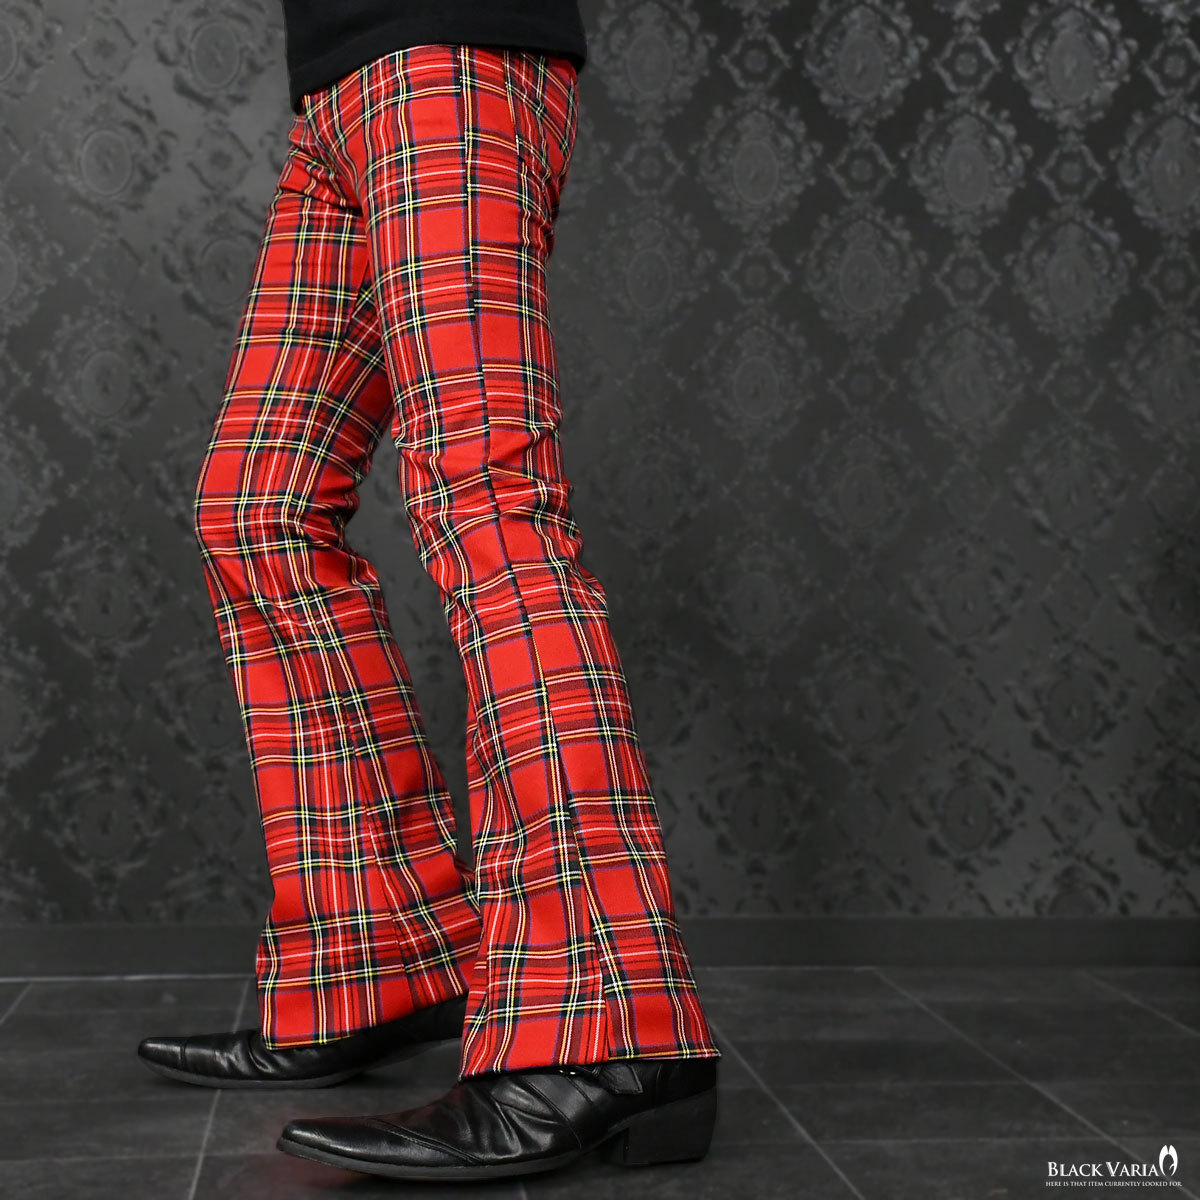 0#182751-re BLACK VARIA タータンチェック 裾広ブーツカット フレアパンツ ストレッチ メンズ (レッド赤) M29 舞台 ステージ衣裳 美脚